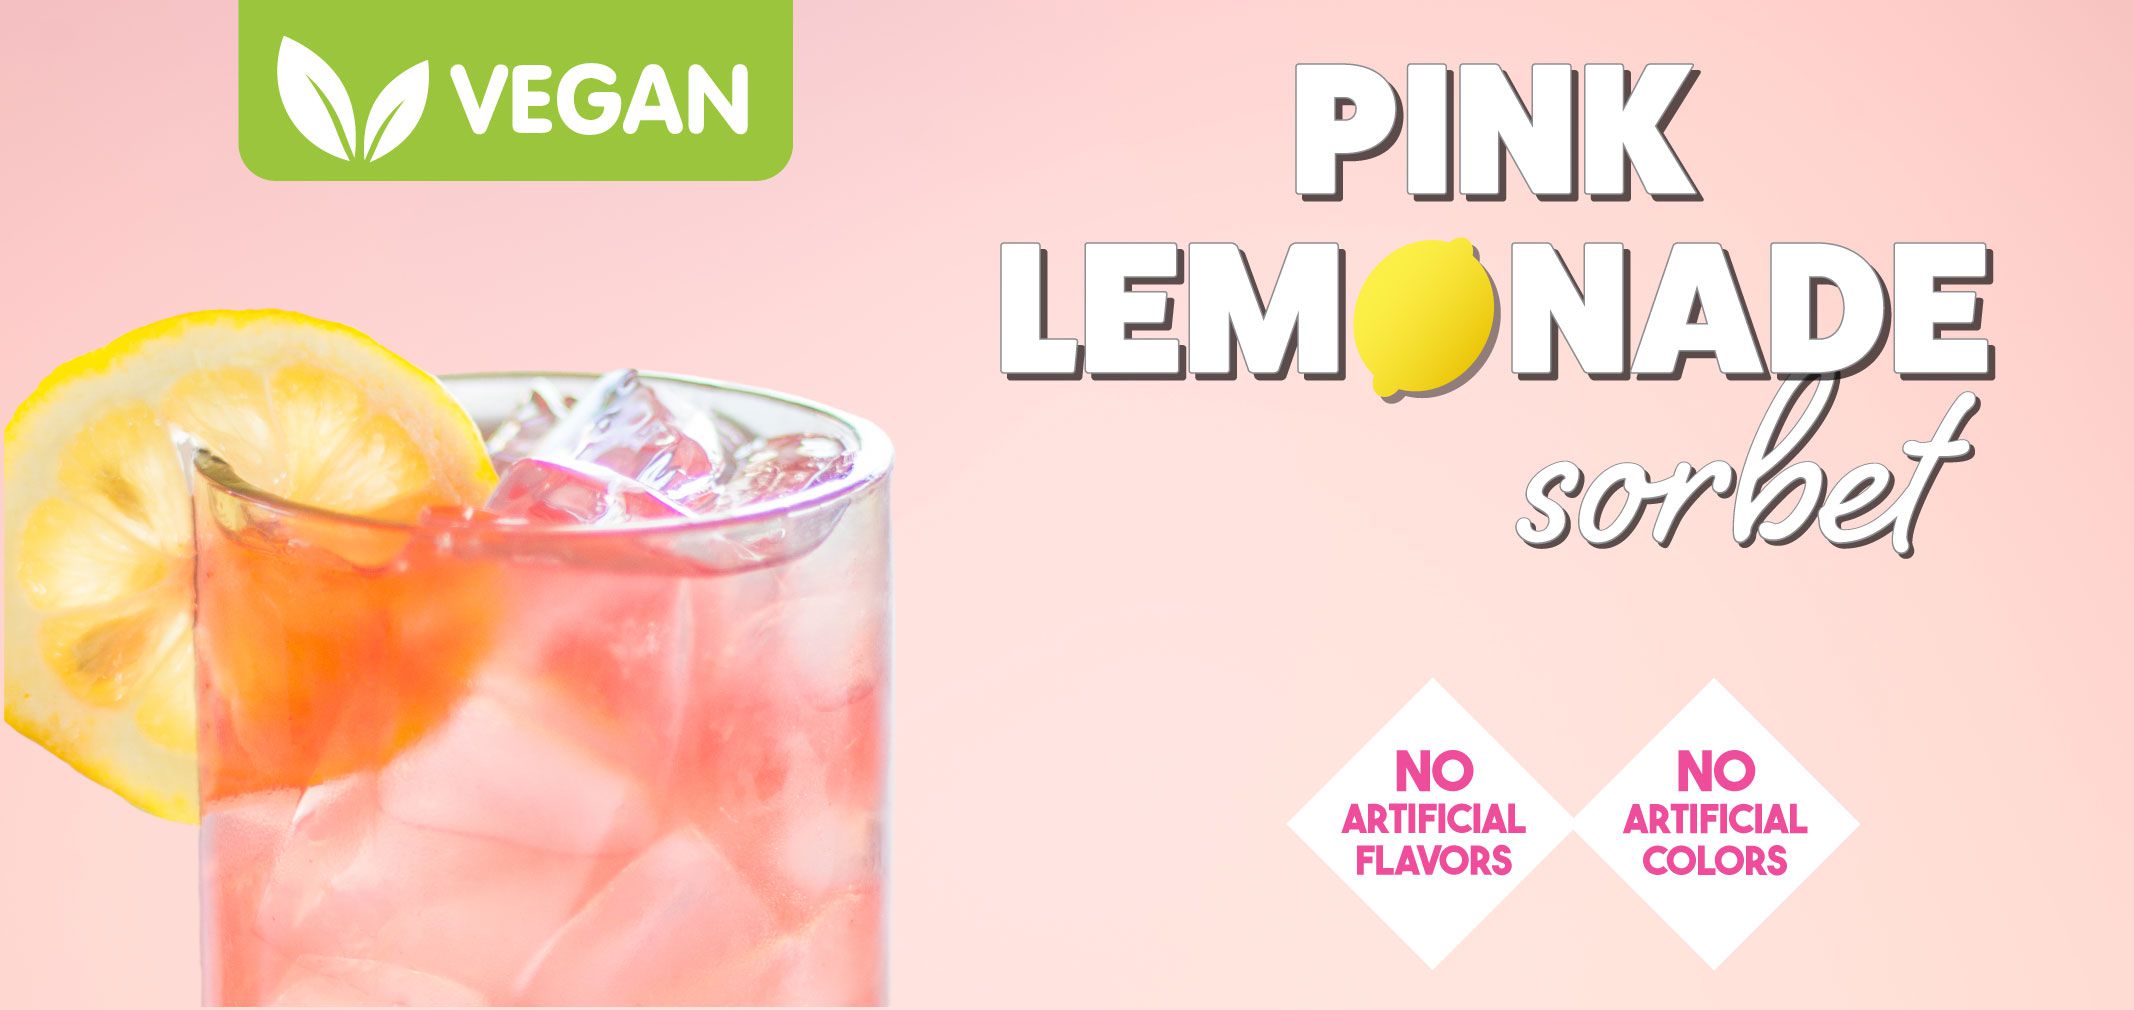 vegan pink lemonade sorbet label image